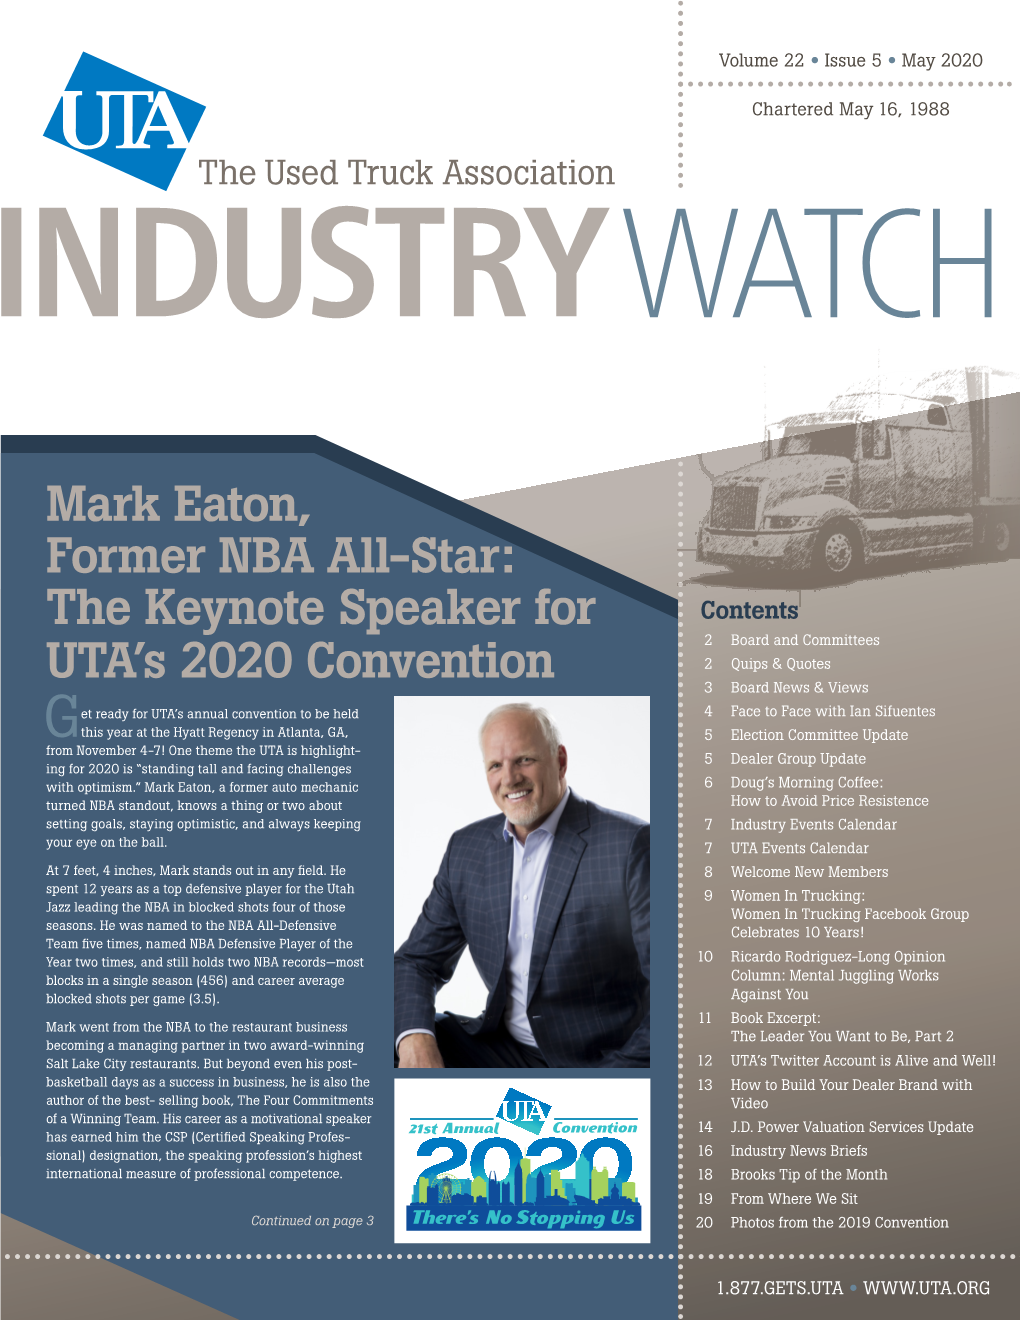 Mark Eaton, Former NBA All-Star: the Keynote Speaker for UTA's 2020